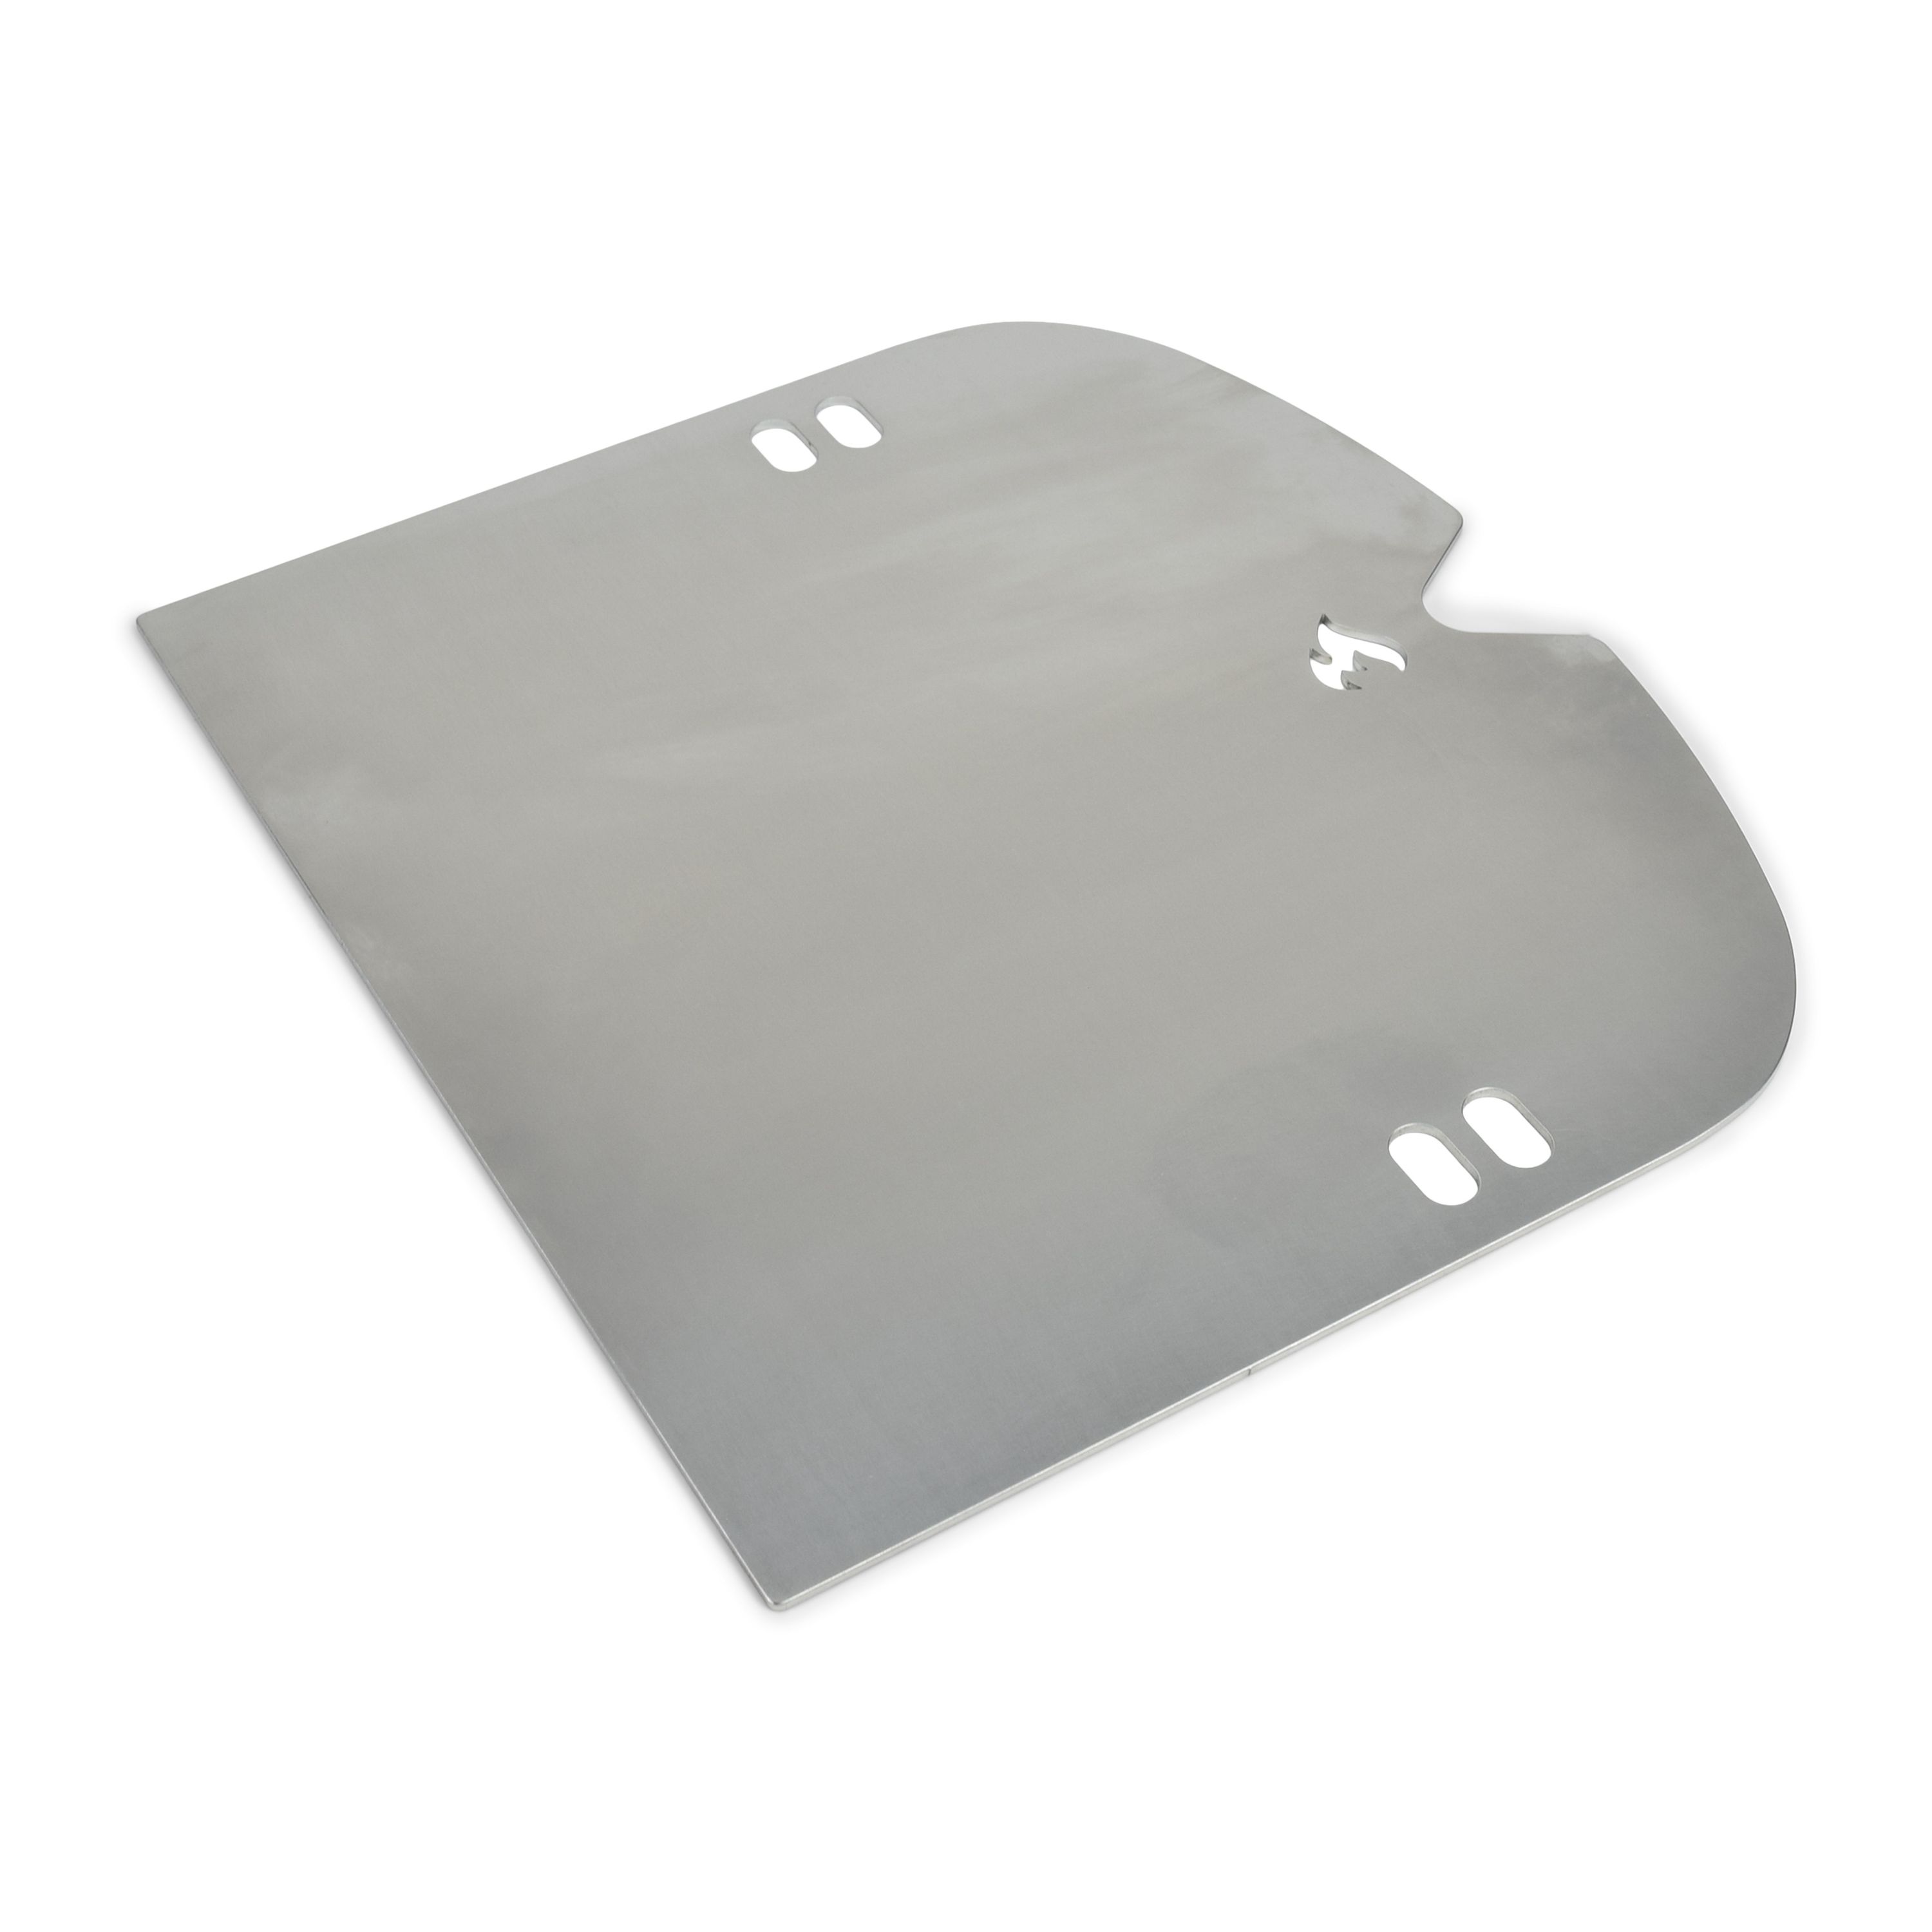 Stainless Steel Plancha for Weber Traveler grill plate